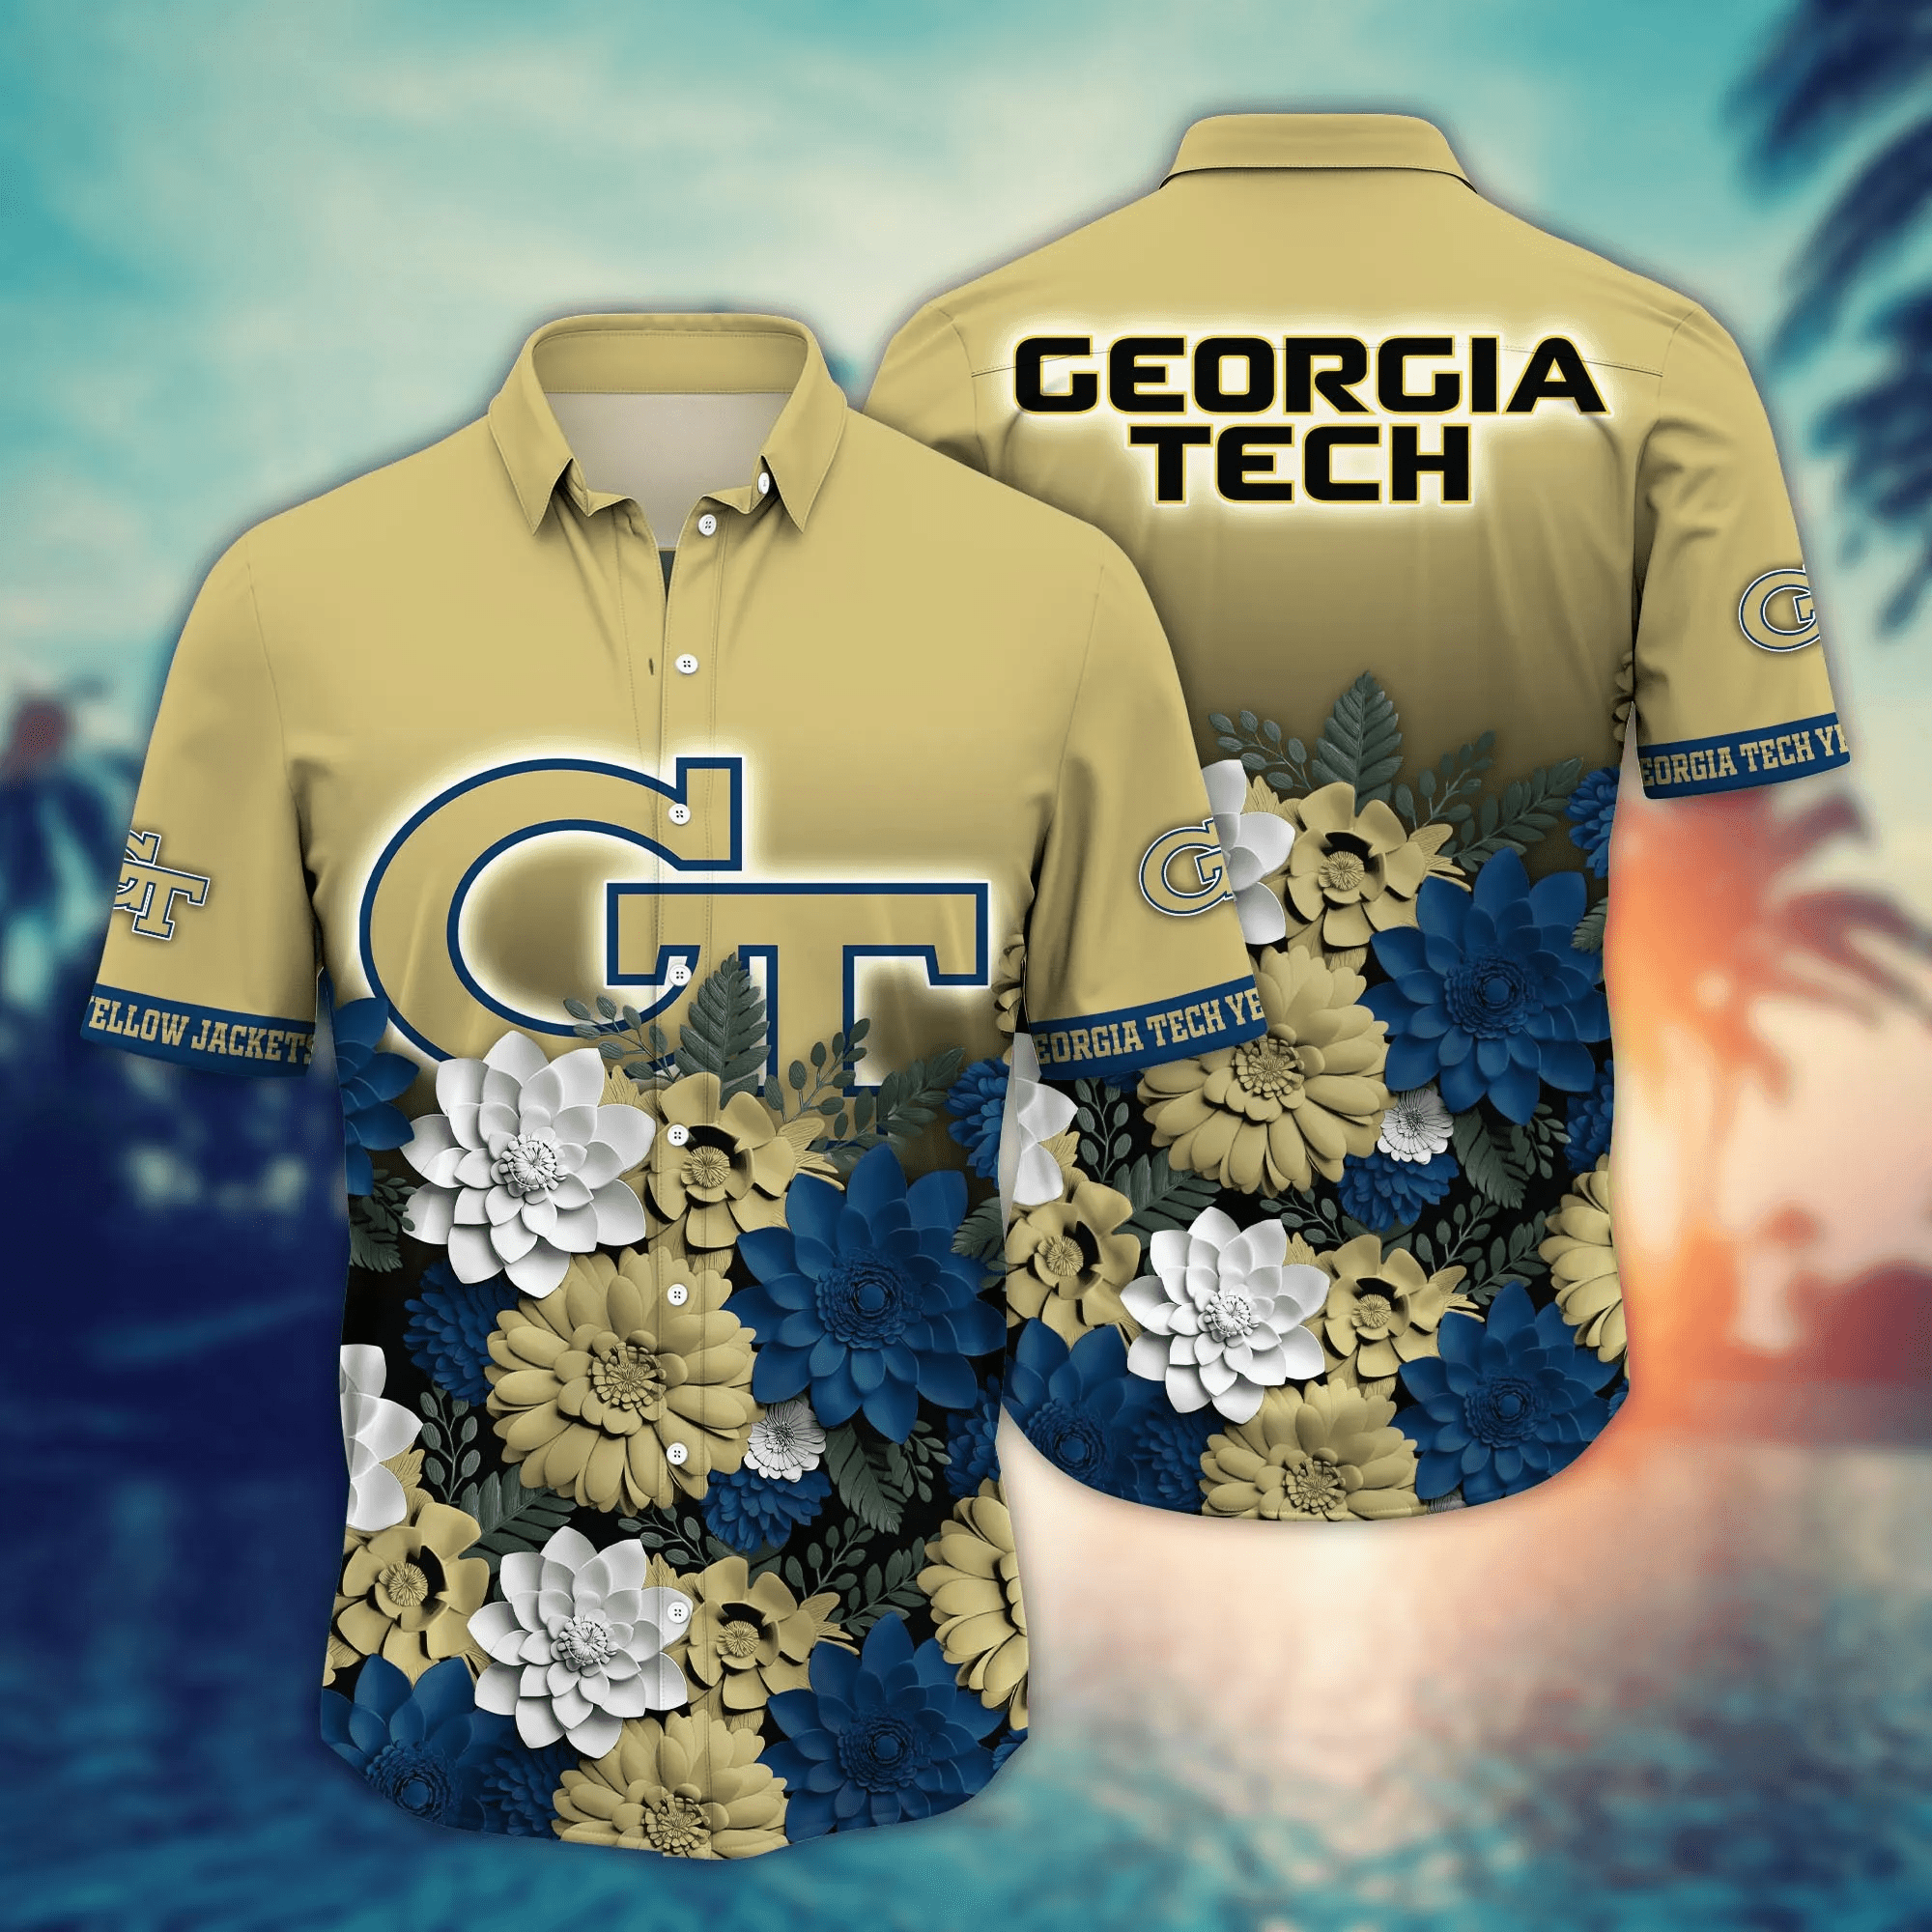 Georgia Tech Yellow Jackets Flower Hawaii Shirt And T Shirt For Fans, Summer Football Shirts